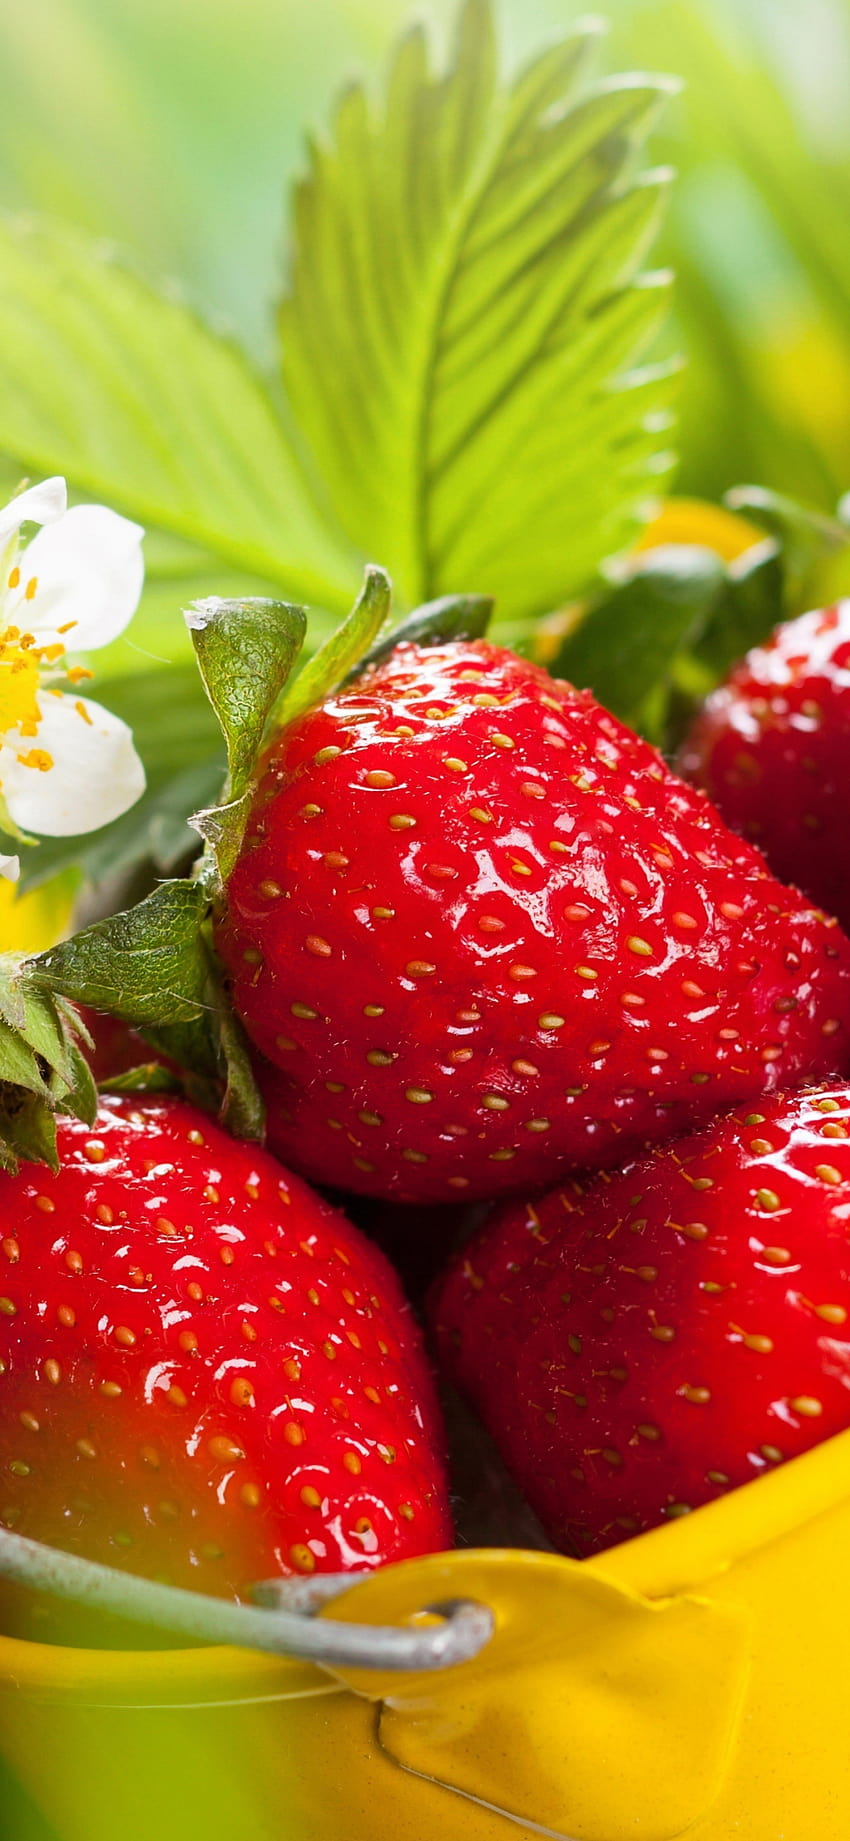 1125x2436 Erdbeeren, Korb, frische Früchte, iPhone x 1125x2436, Hintergrund, 5260 HD-Handy-Hintergrundbild